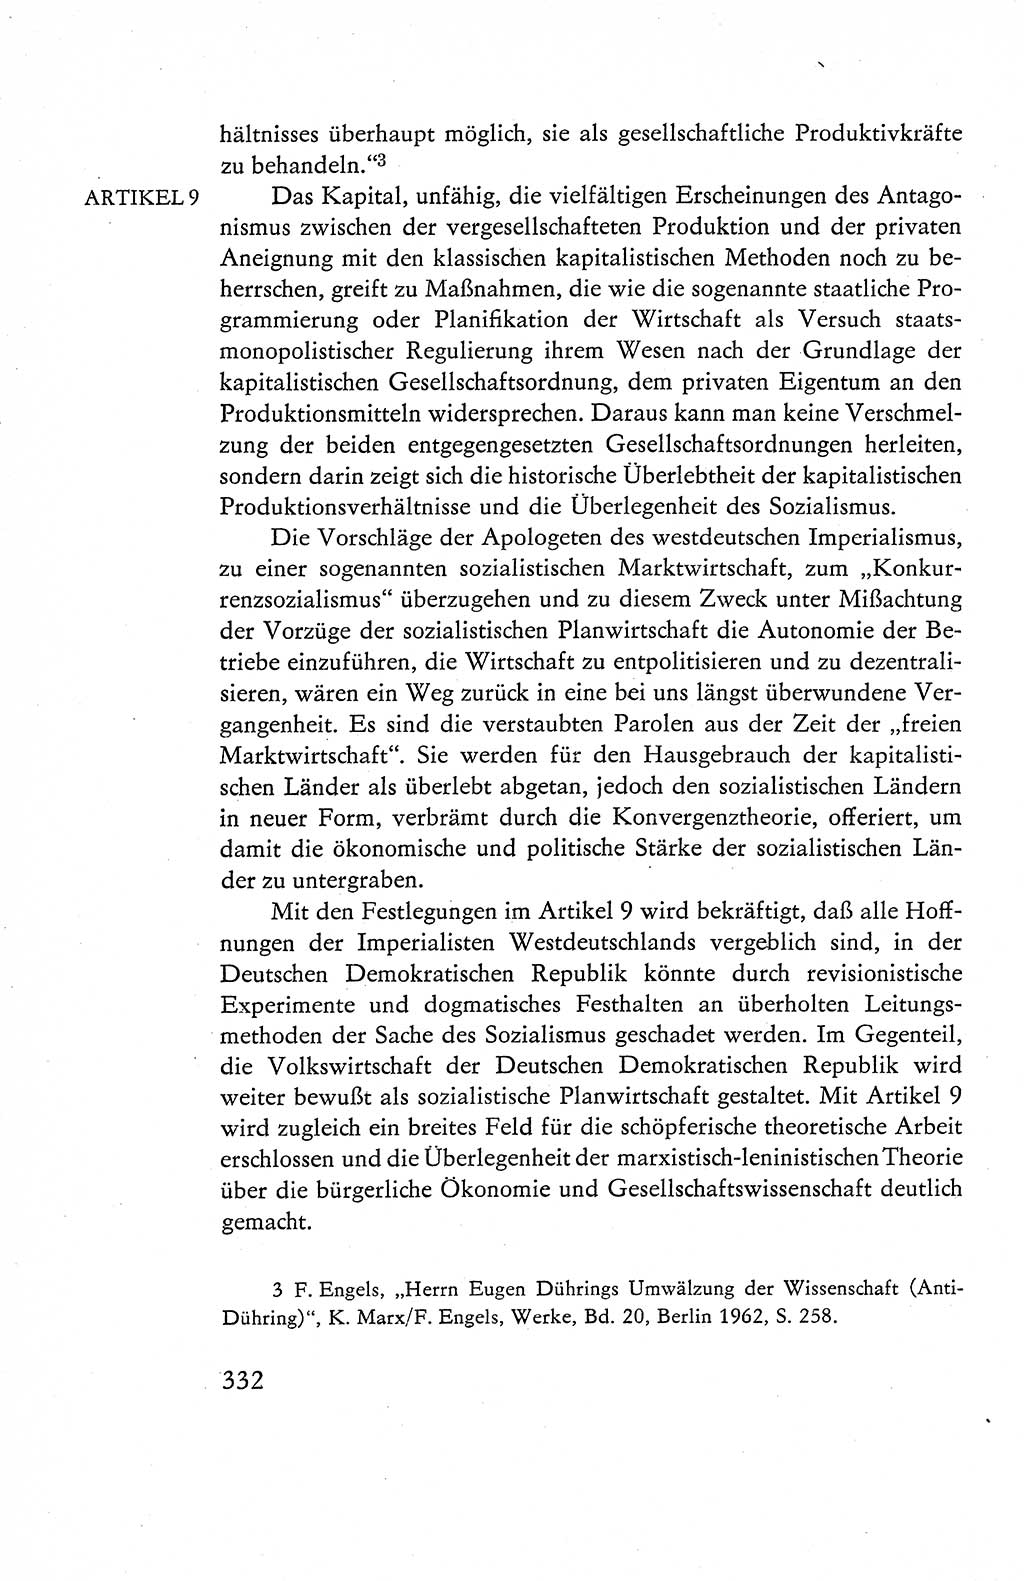 Verfassung der Deutschen Demokratischen Republik (DDR), Dokumente, Kommentar 1969, Band 1, Seite 332 (Verf. DDR Dok. Komm. 1969, Bd. 1, S. 332)